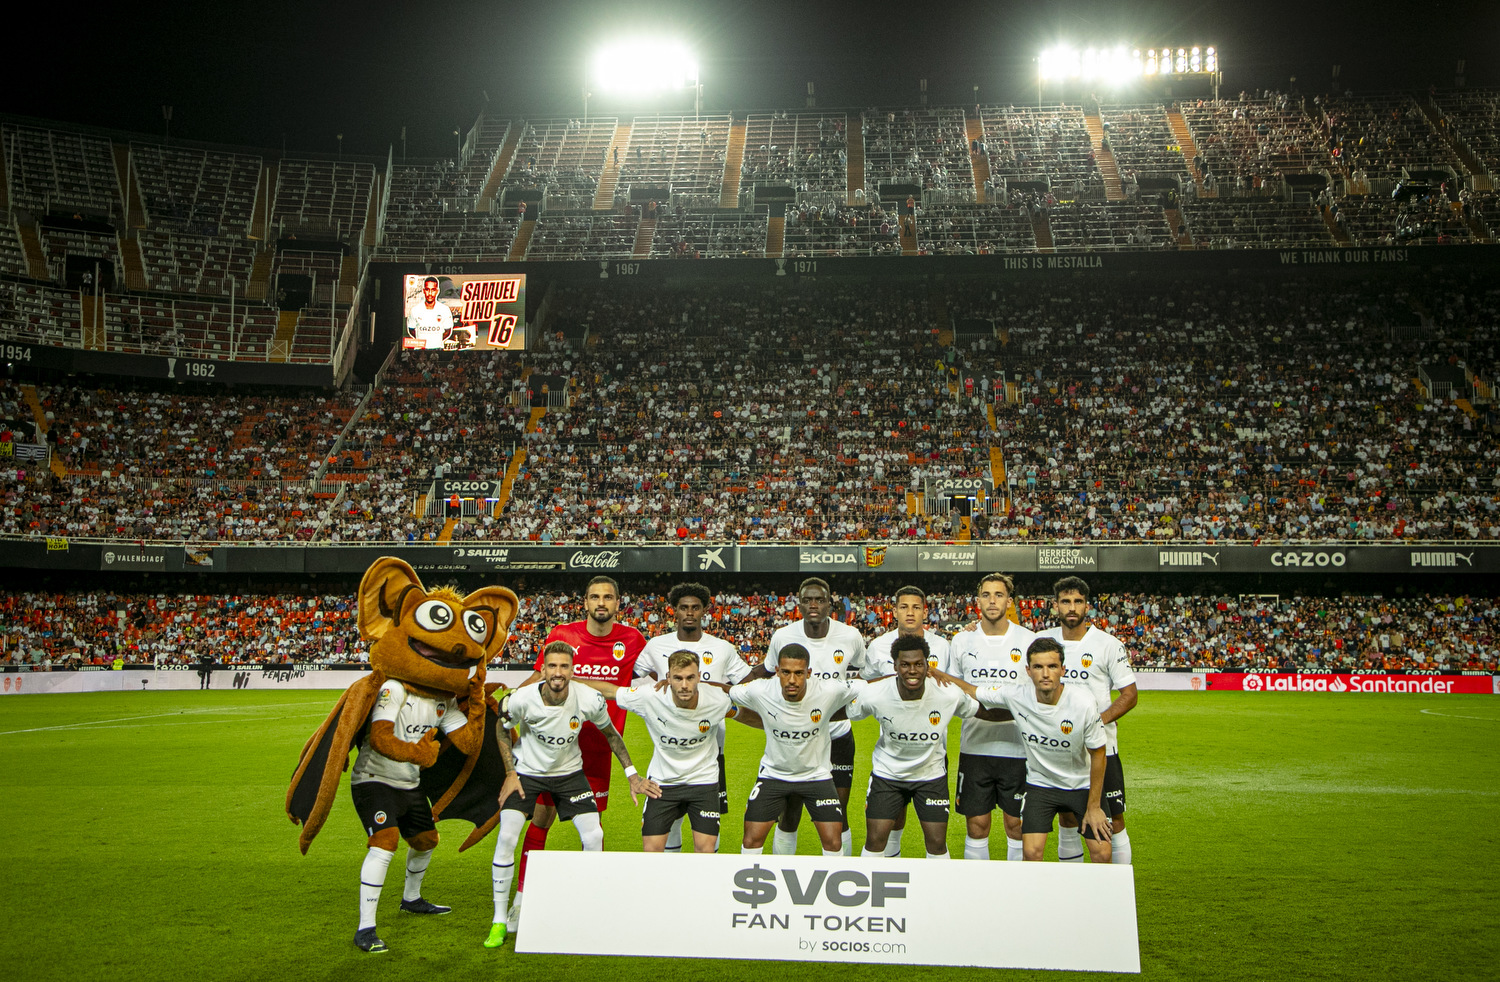 Los Fan Token de Valencia CF ($VCF) - Fan Token